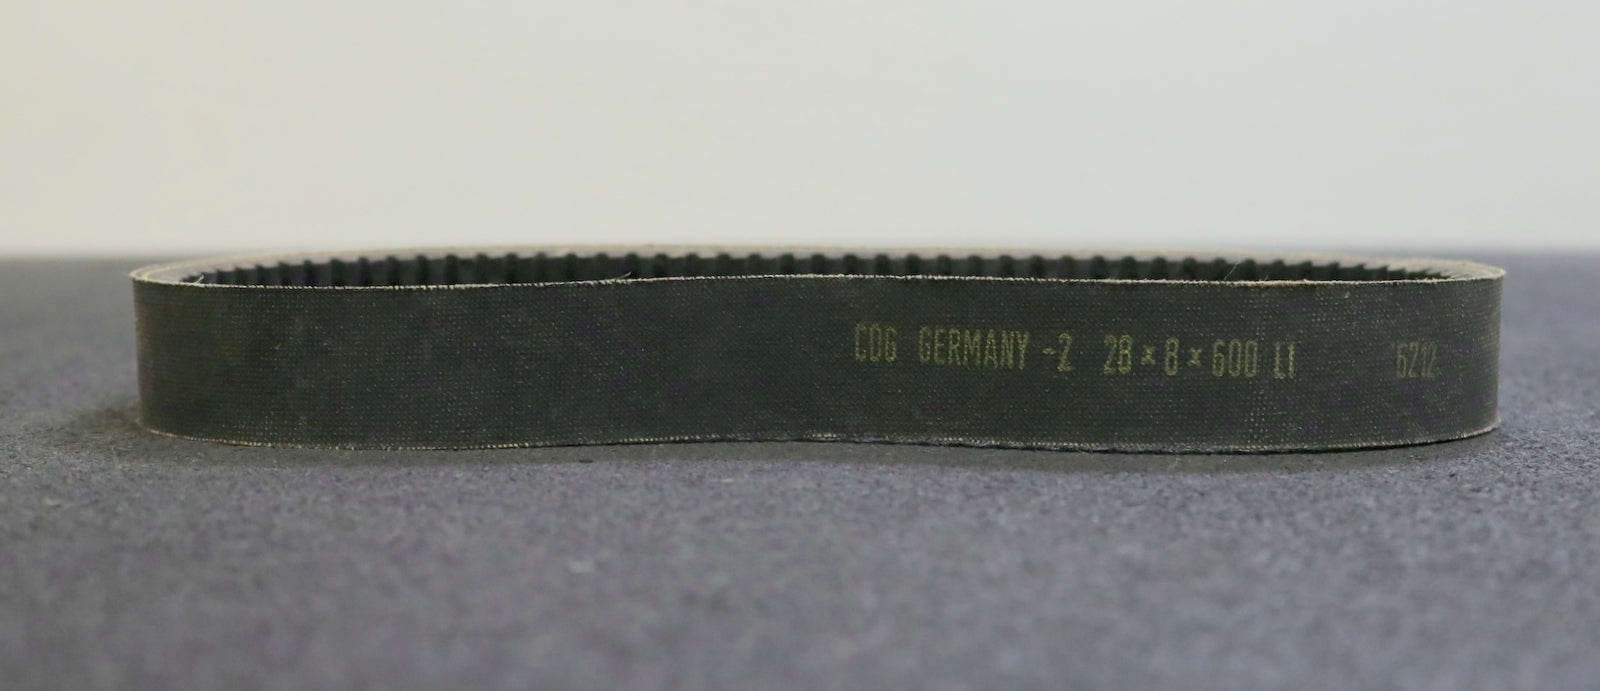 COG GERMANY Breitkeilriemen Wide V-belt 28x8x600Li Innenlänge 600mm Breite 28mm